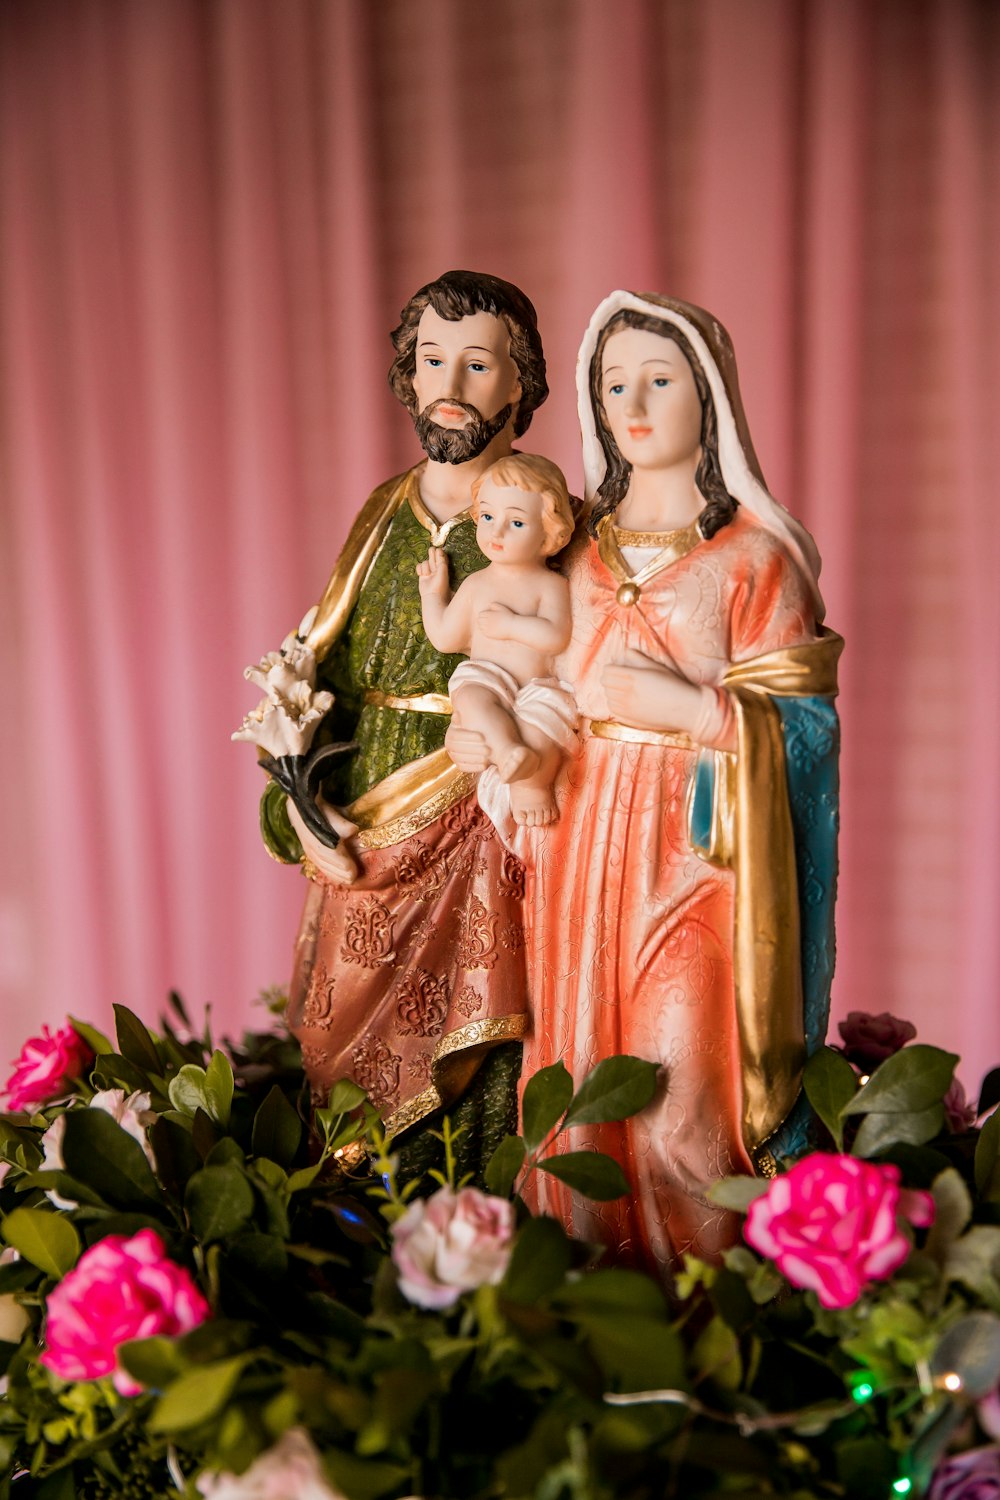 Statuetta della Vergine Maria su tessuto floreale rosso e verde